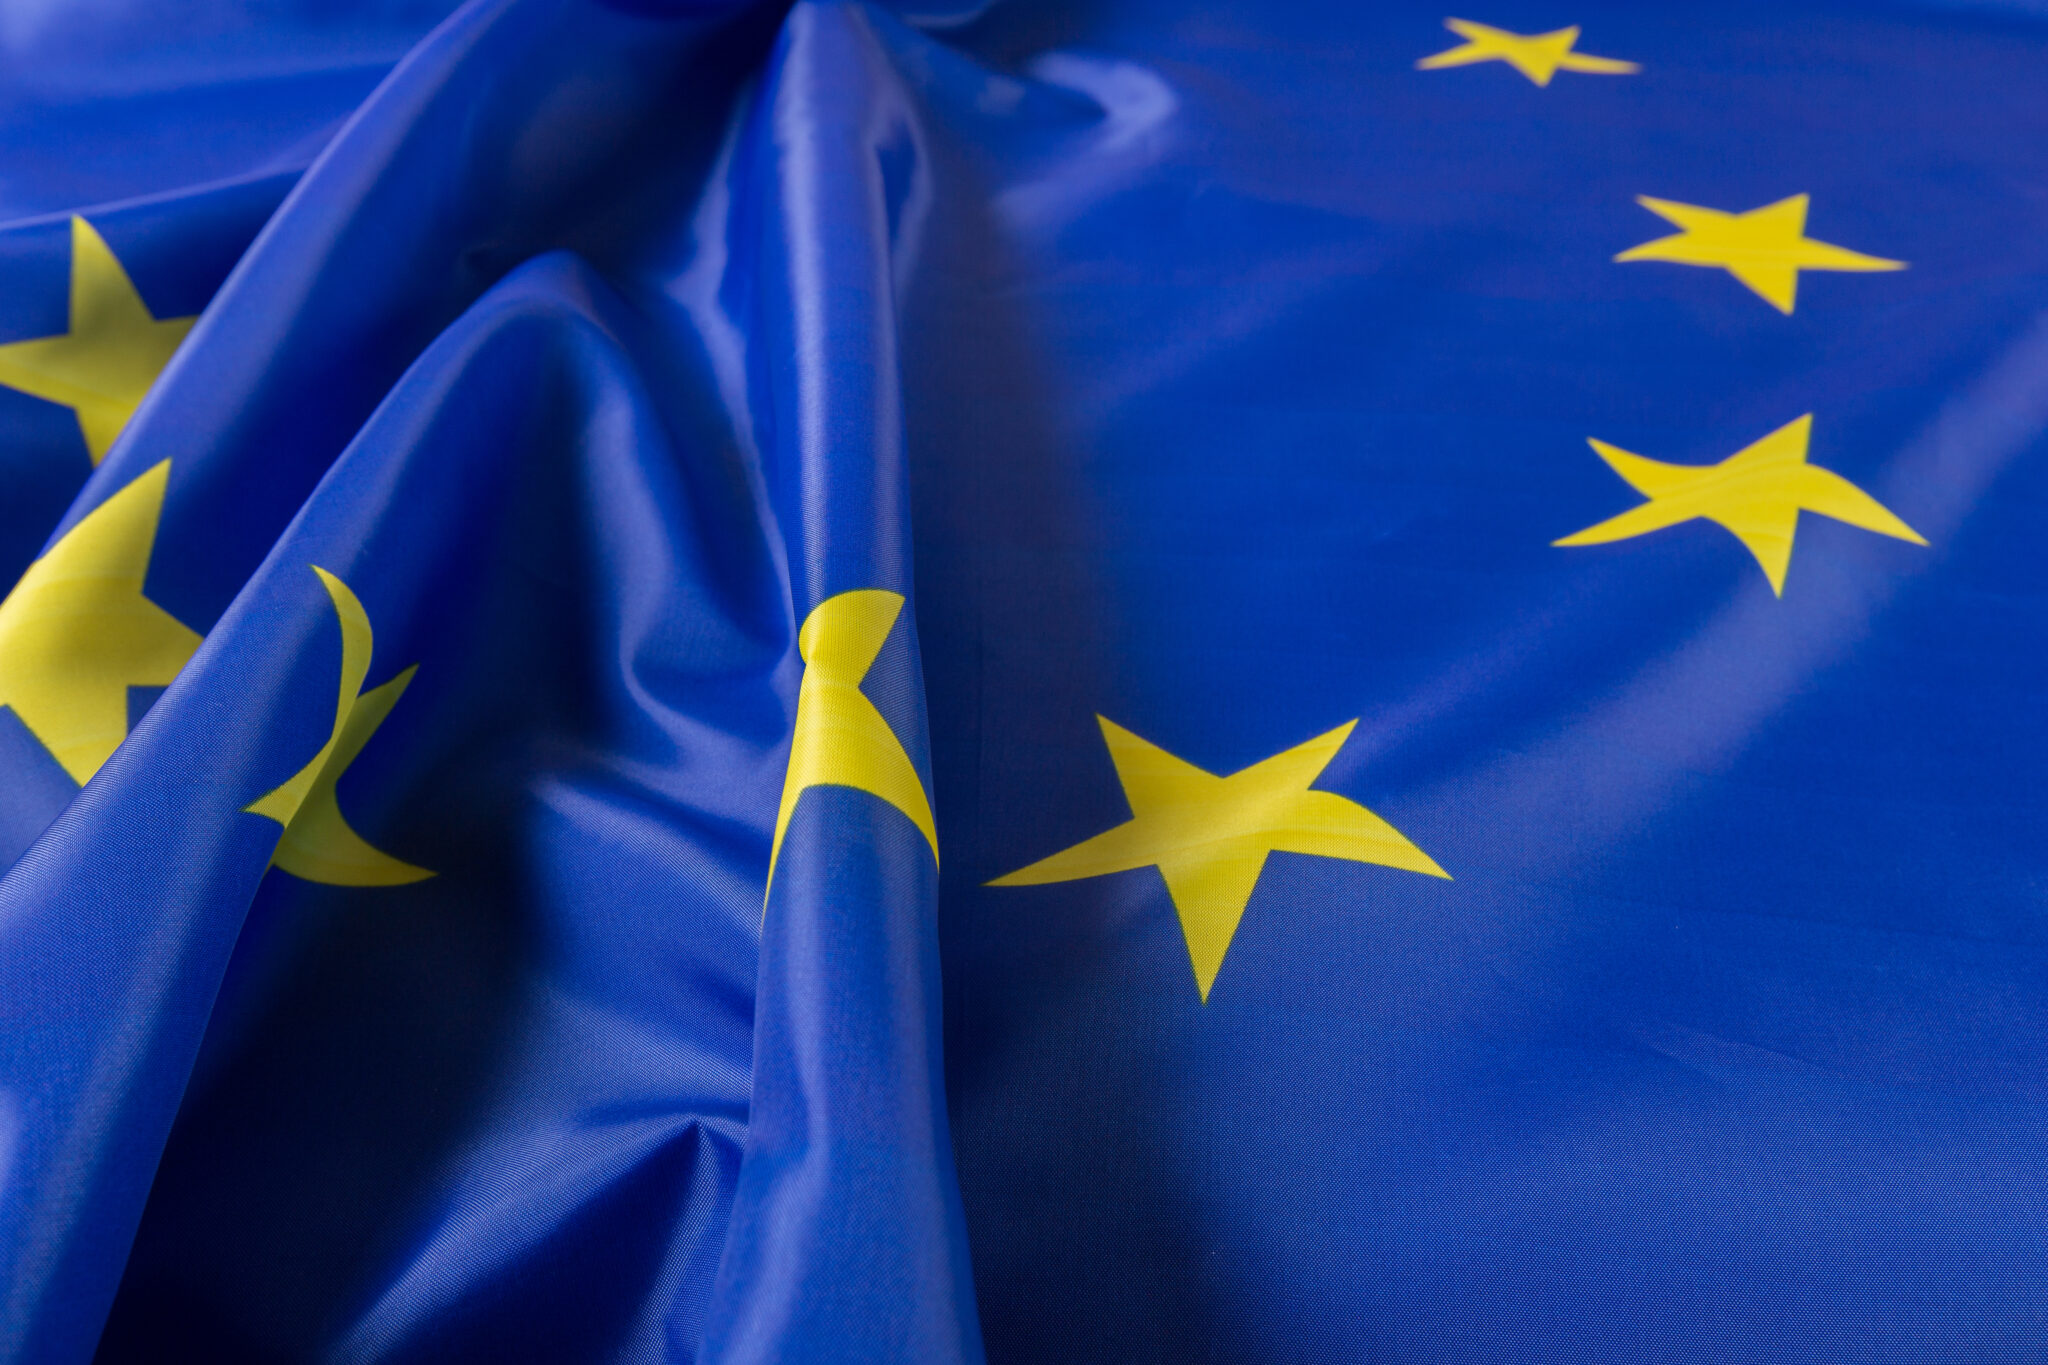 Euratex valora positivamente el anuncio de la Comisión Europea al respecto de la asociación "Textiles del Futuro", para desarrollar una industria textil europea impulsada por la innovación